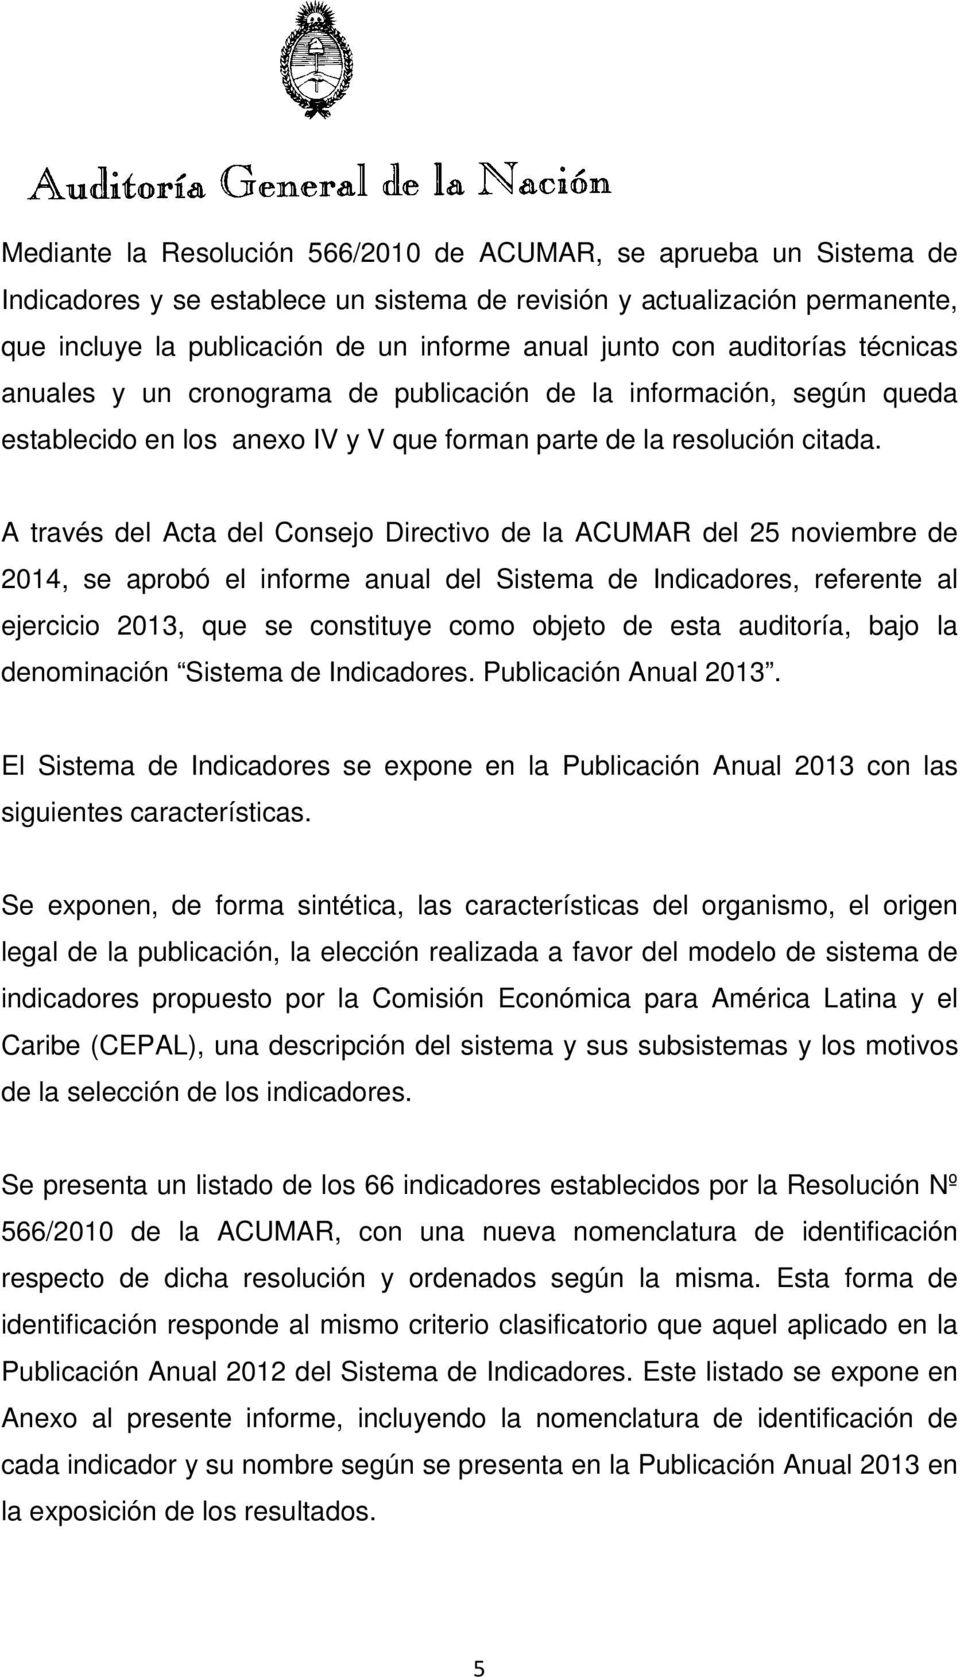 A través del Acta del Consejo Directivo de la ACUMAR del 25 noviembre de 2014, se aprobó el informe anual del Sistema de Indicadores, referente al ejercicio 2013, que se constituye como objeto de